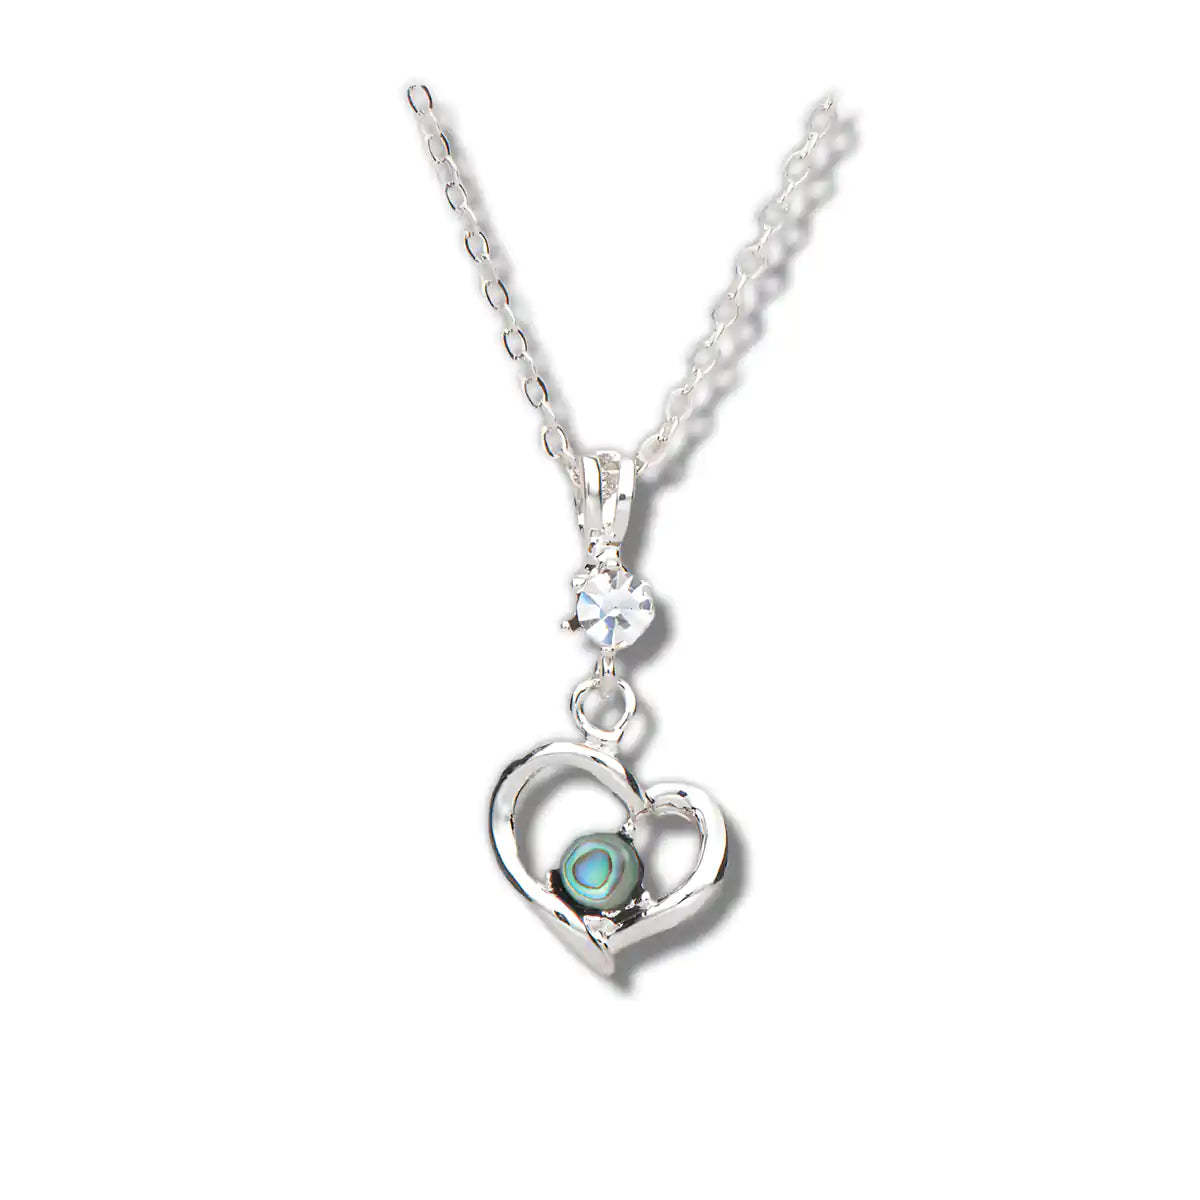 Glacier pearle loving memento necklace